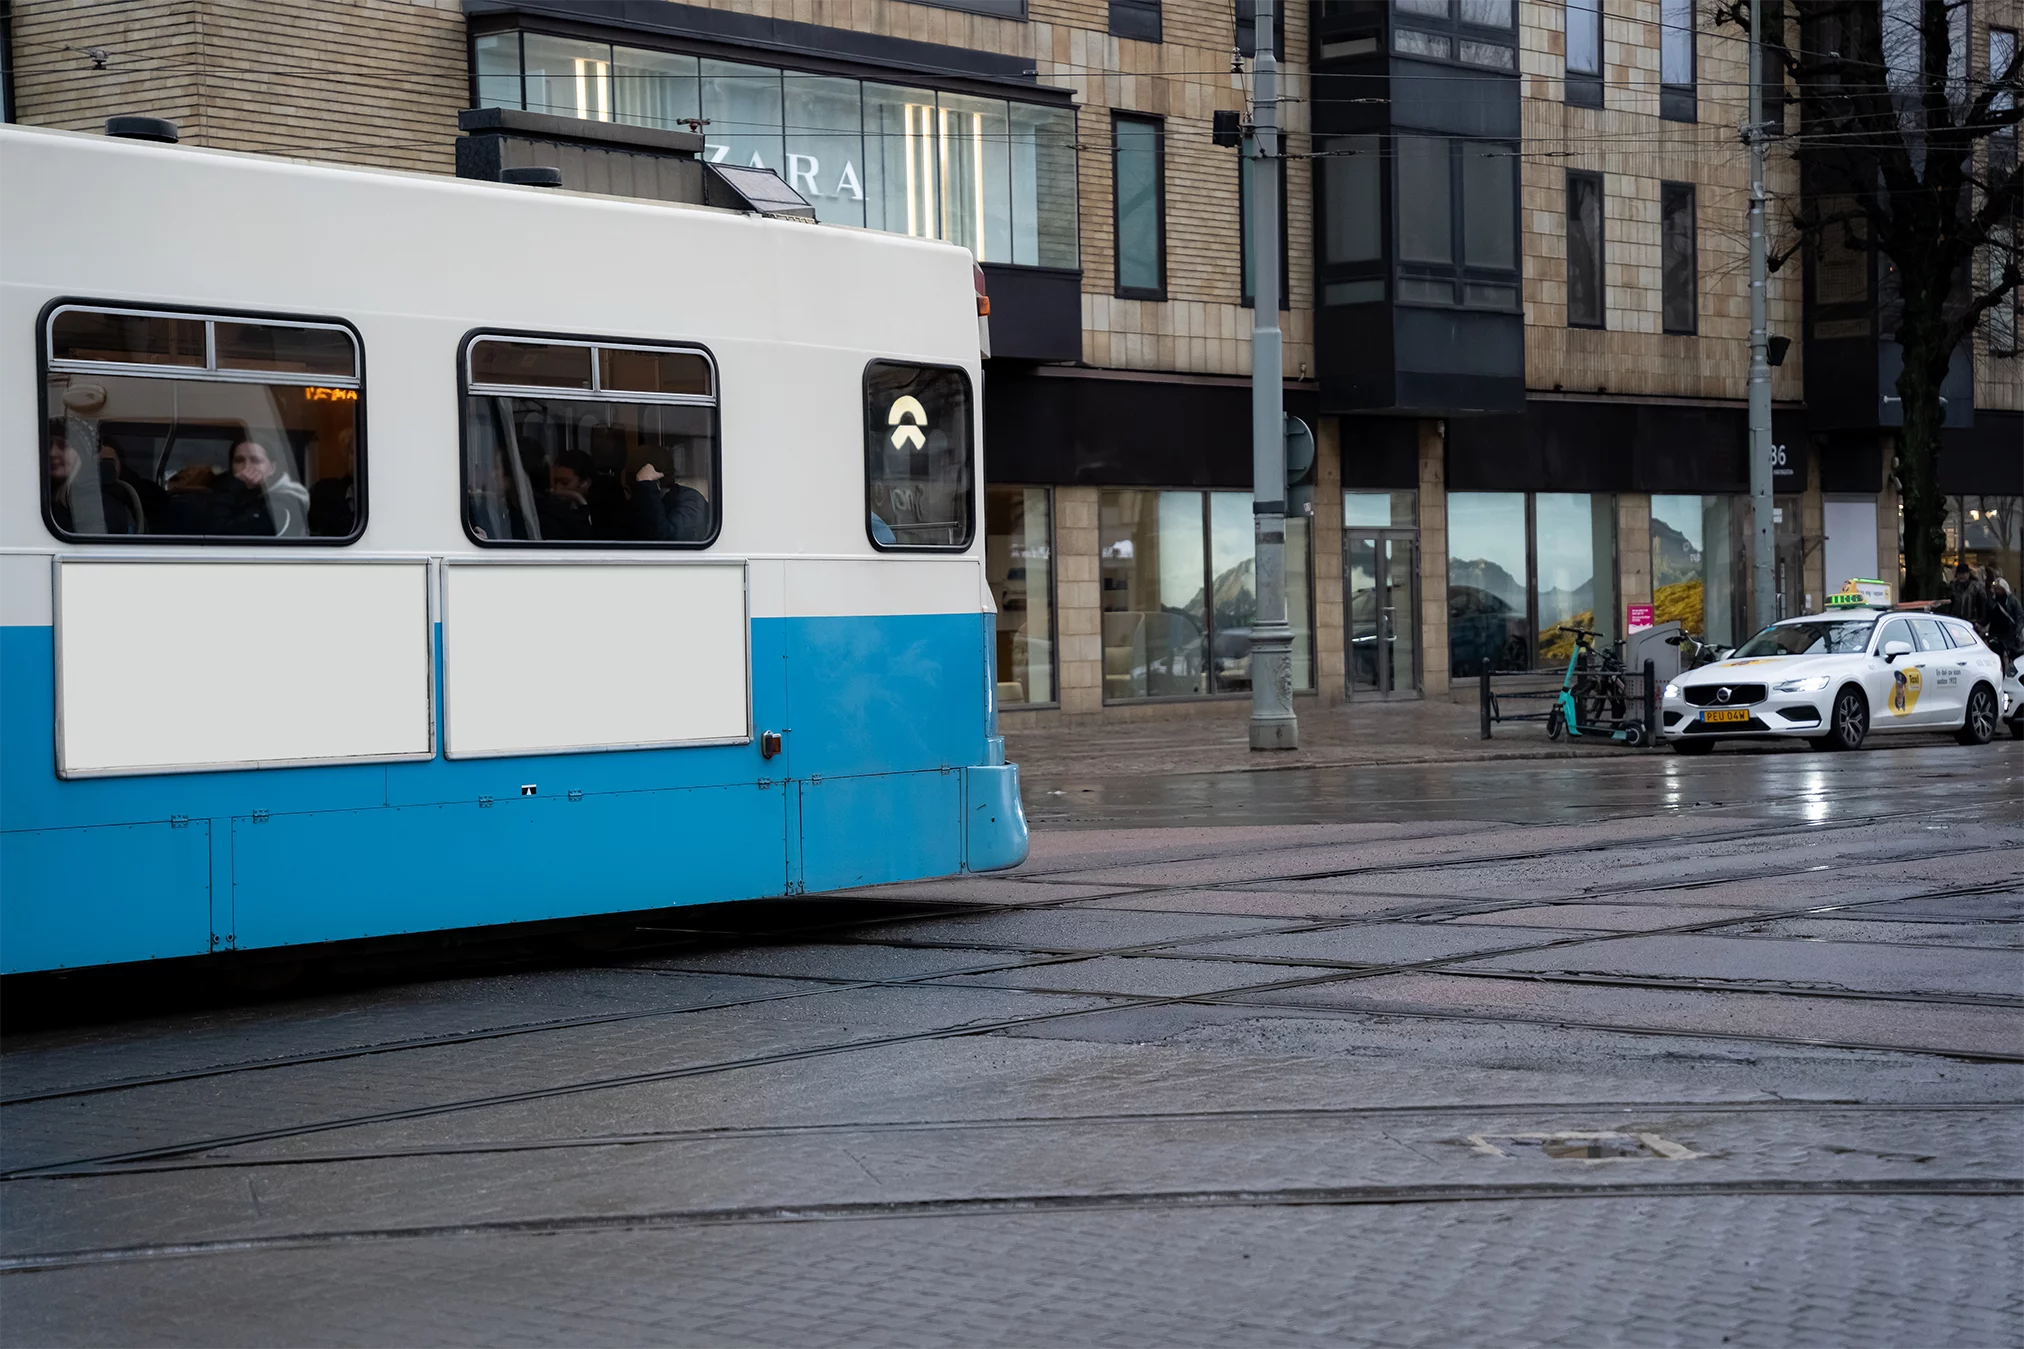 Tram Brunnsparken - Two Surfaces